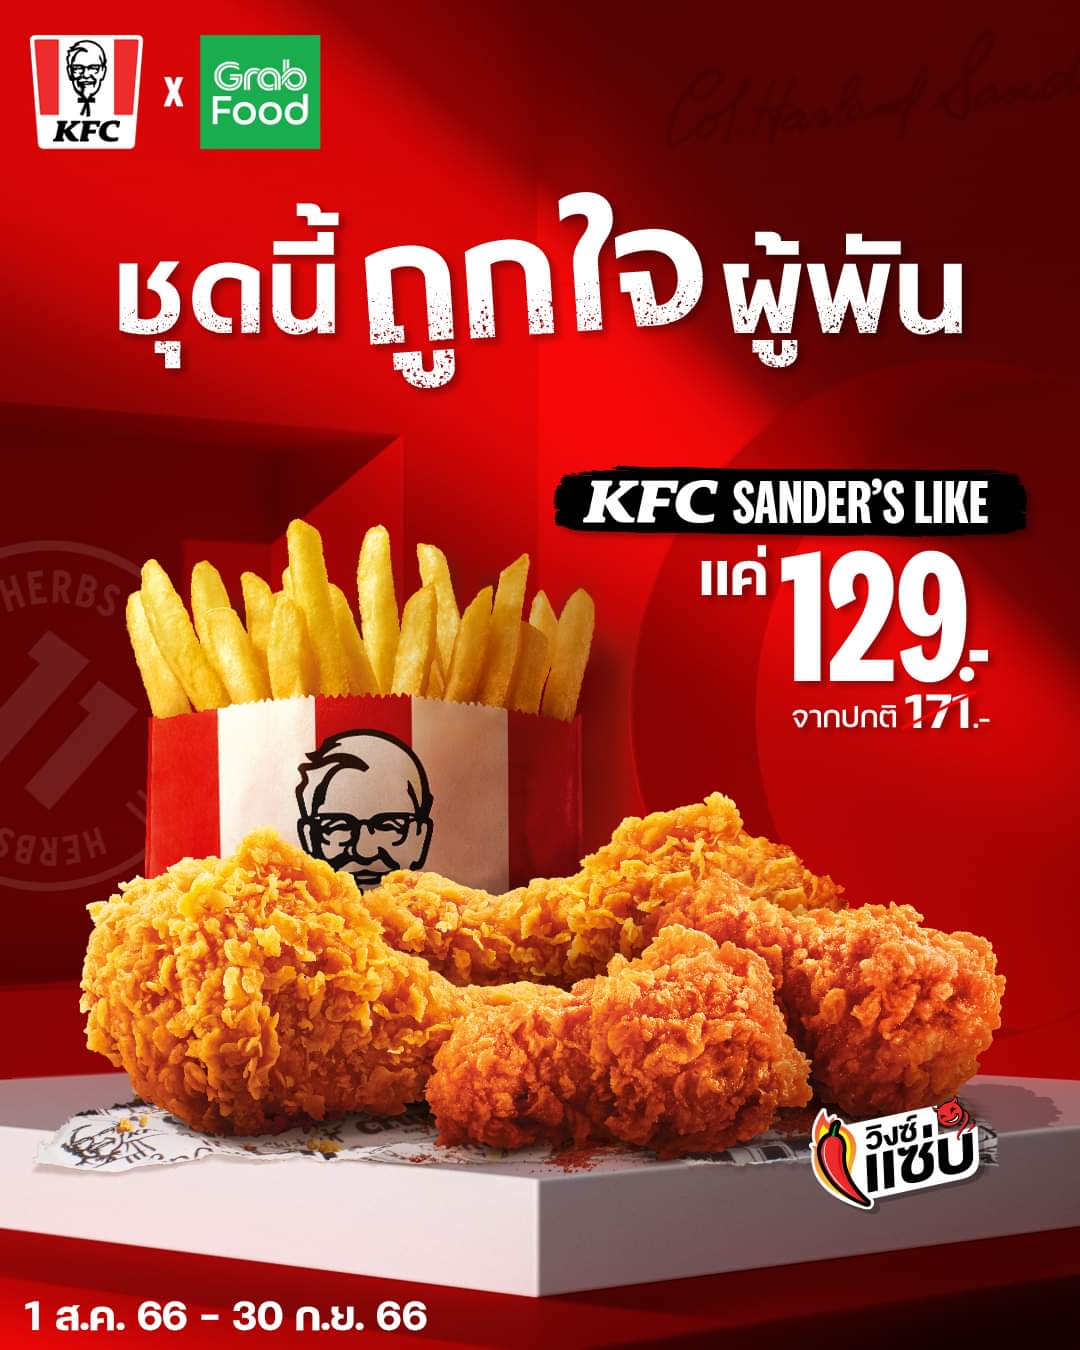 โปรโมชั่น เคเอฟซี : ‘KFC Sander’s Like’ อร่อยถูกใจ คุ้มชัวร์ ไก่ทอด 2 วิงซ์แซ่บ 2 แถมมีเฟรนช์ฟรายส์ แต่จ่ายแค่ 129.-